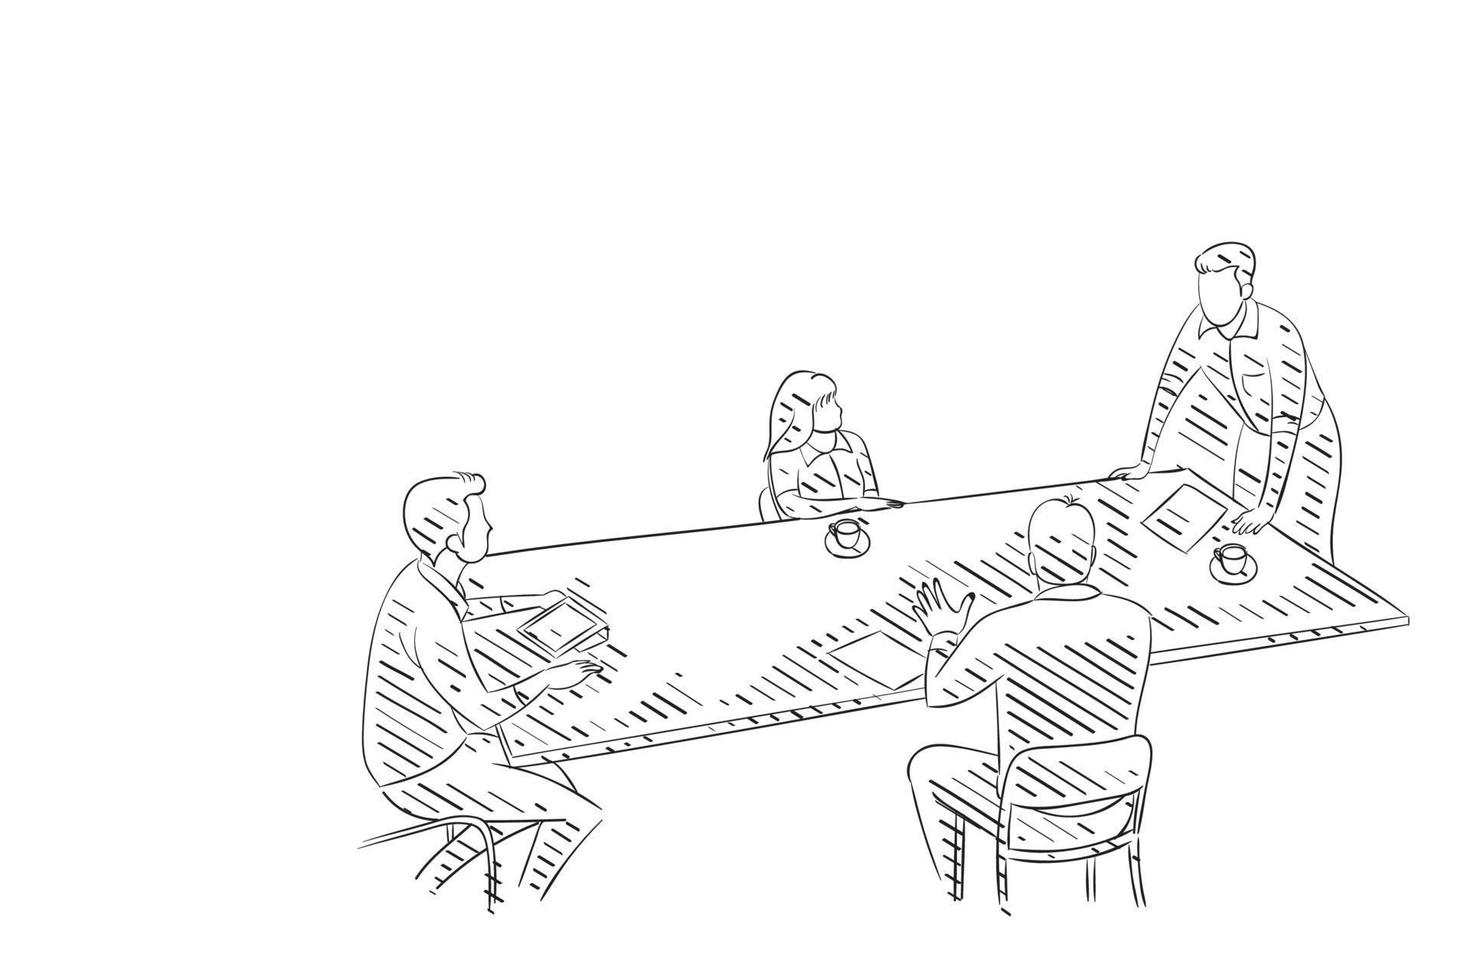 mão desenhada de reunião de negócios na ilustração vetorial de escritório vetor